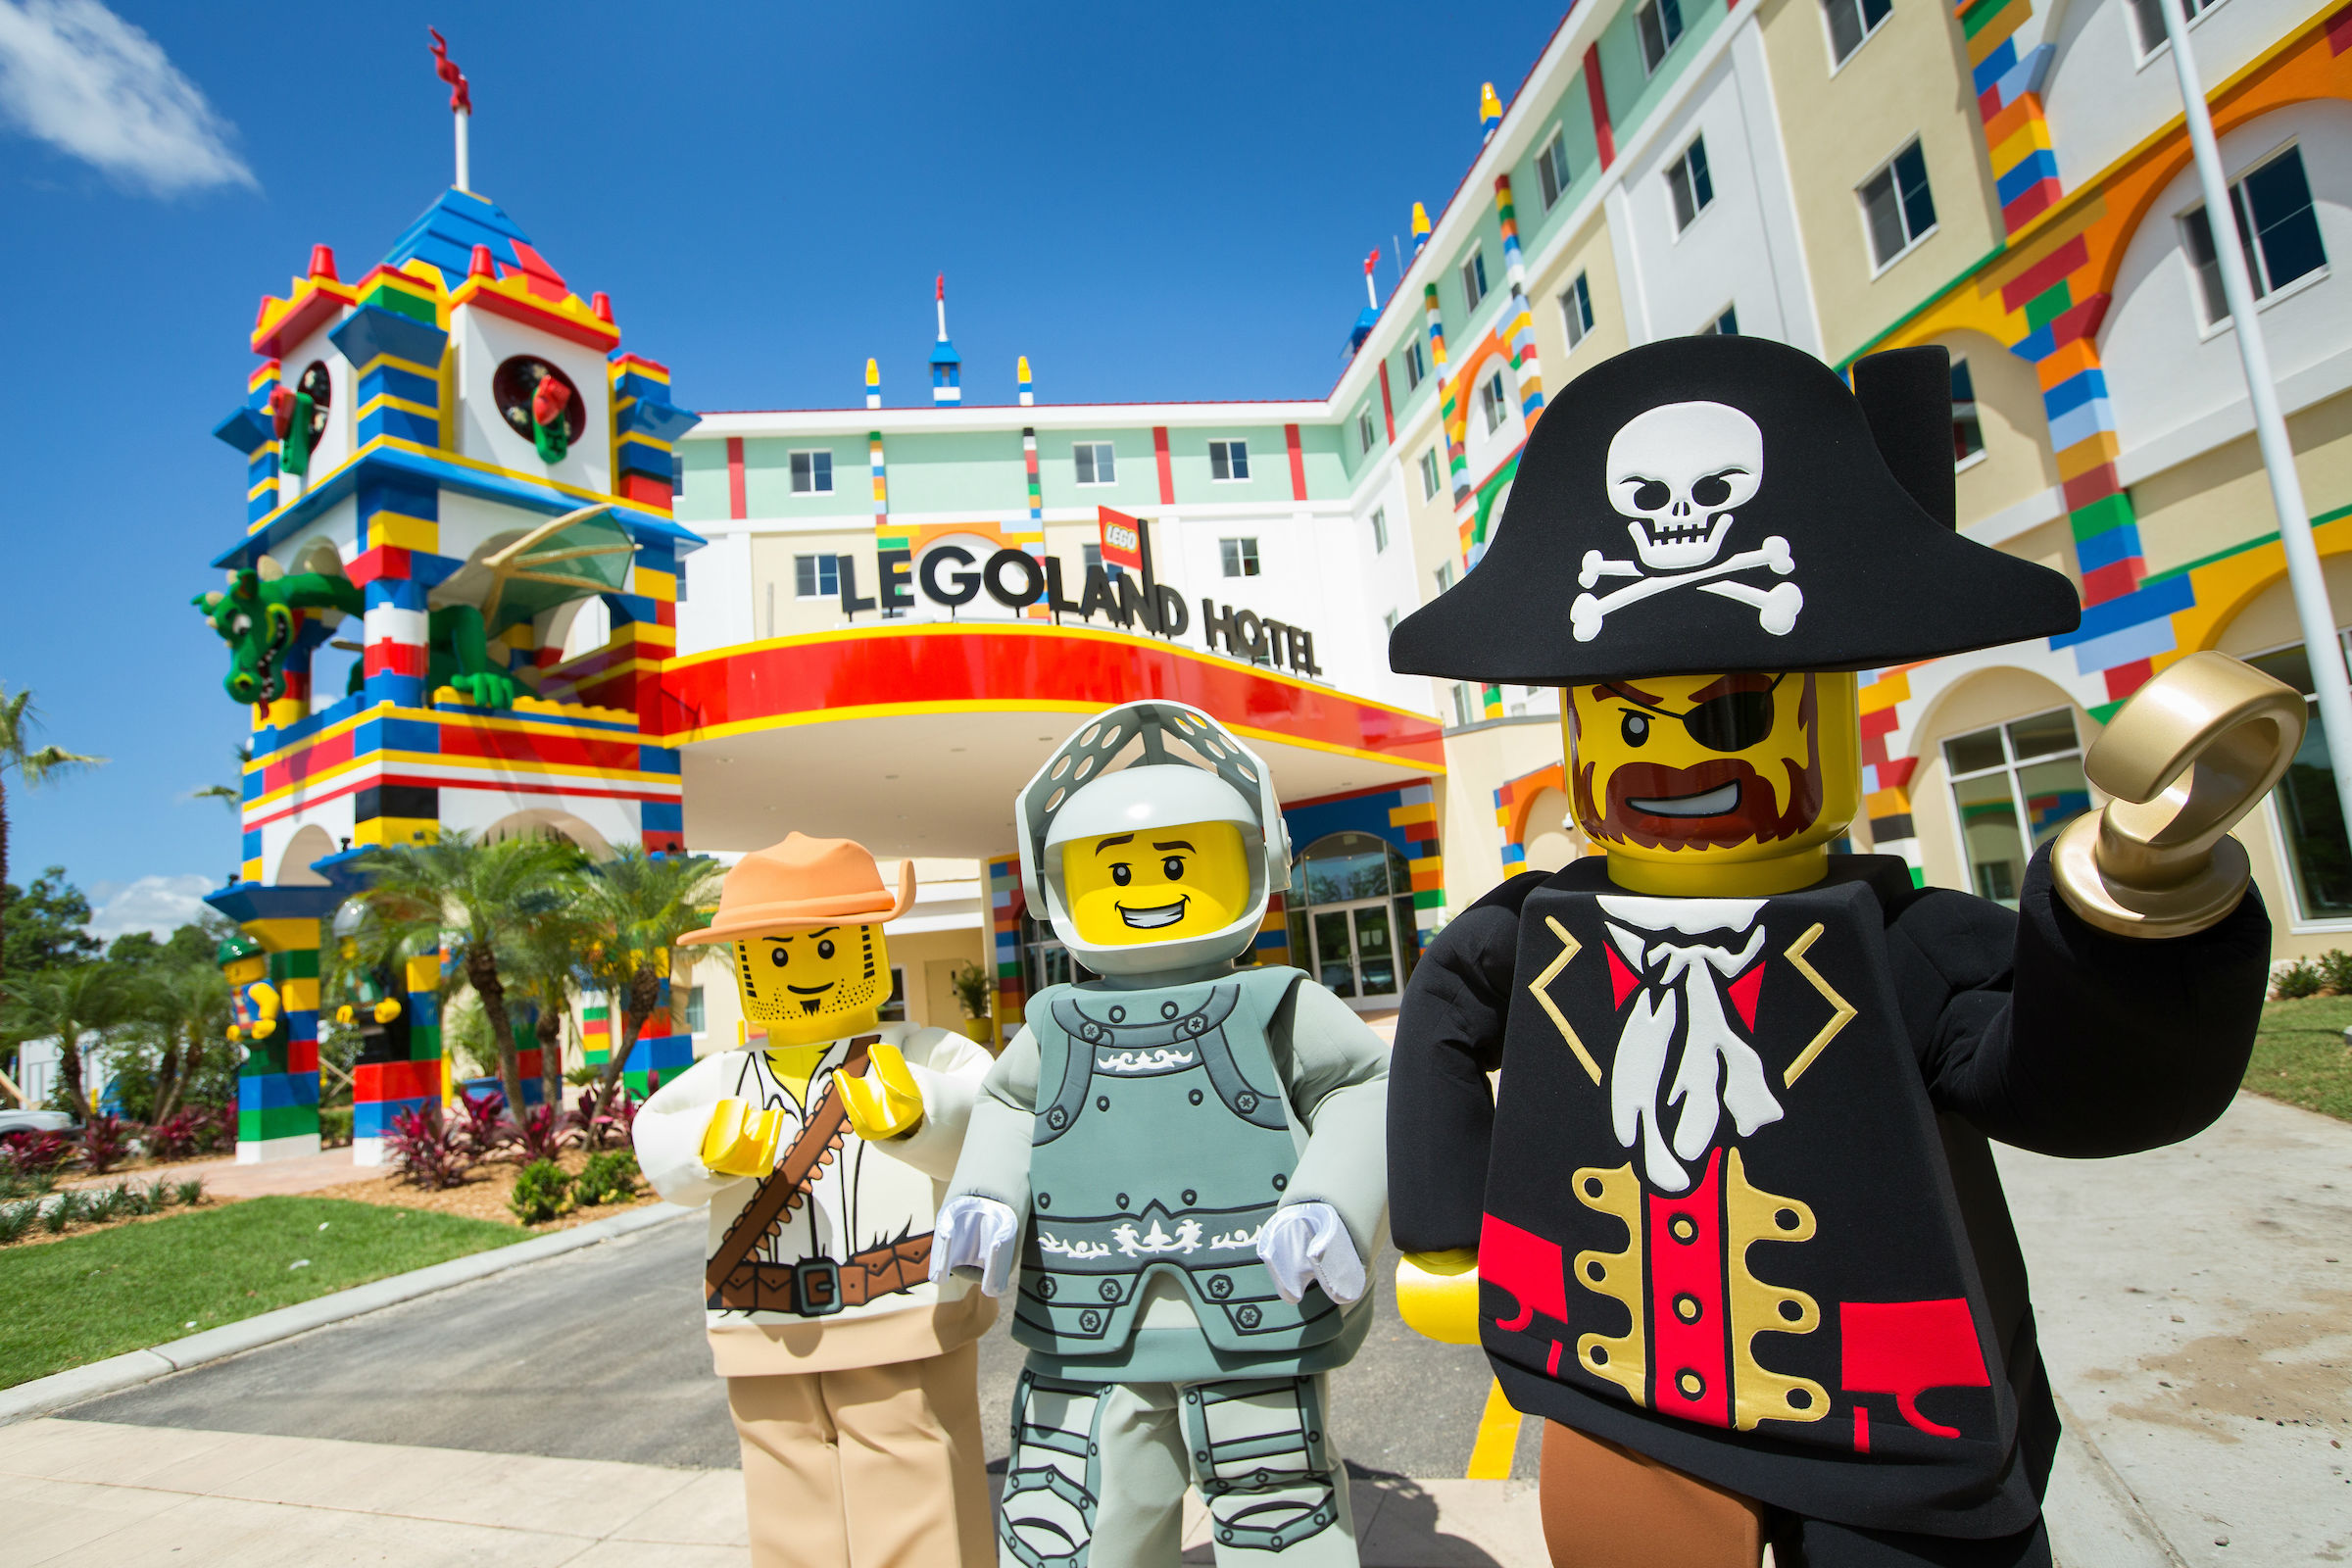 Legoland hotel 10